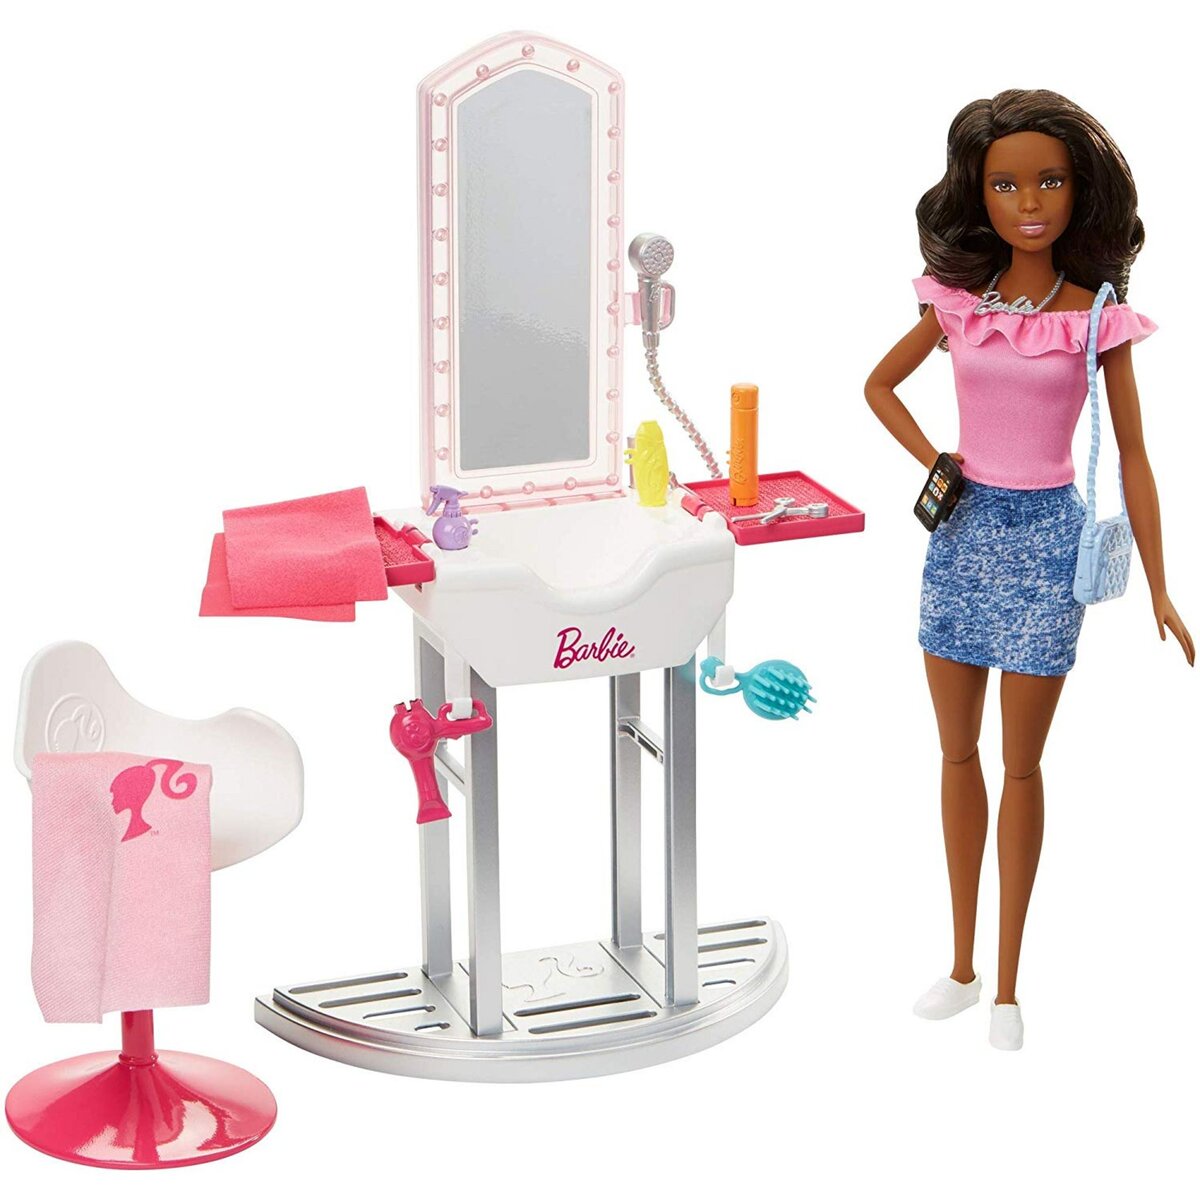 Achetez Set de Coiffure Barbie avec Sèche-cheveux et autres